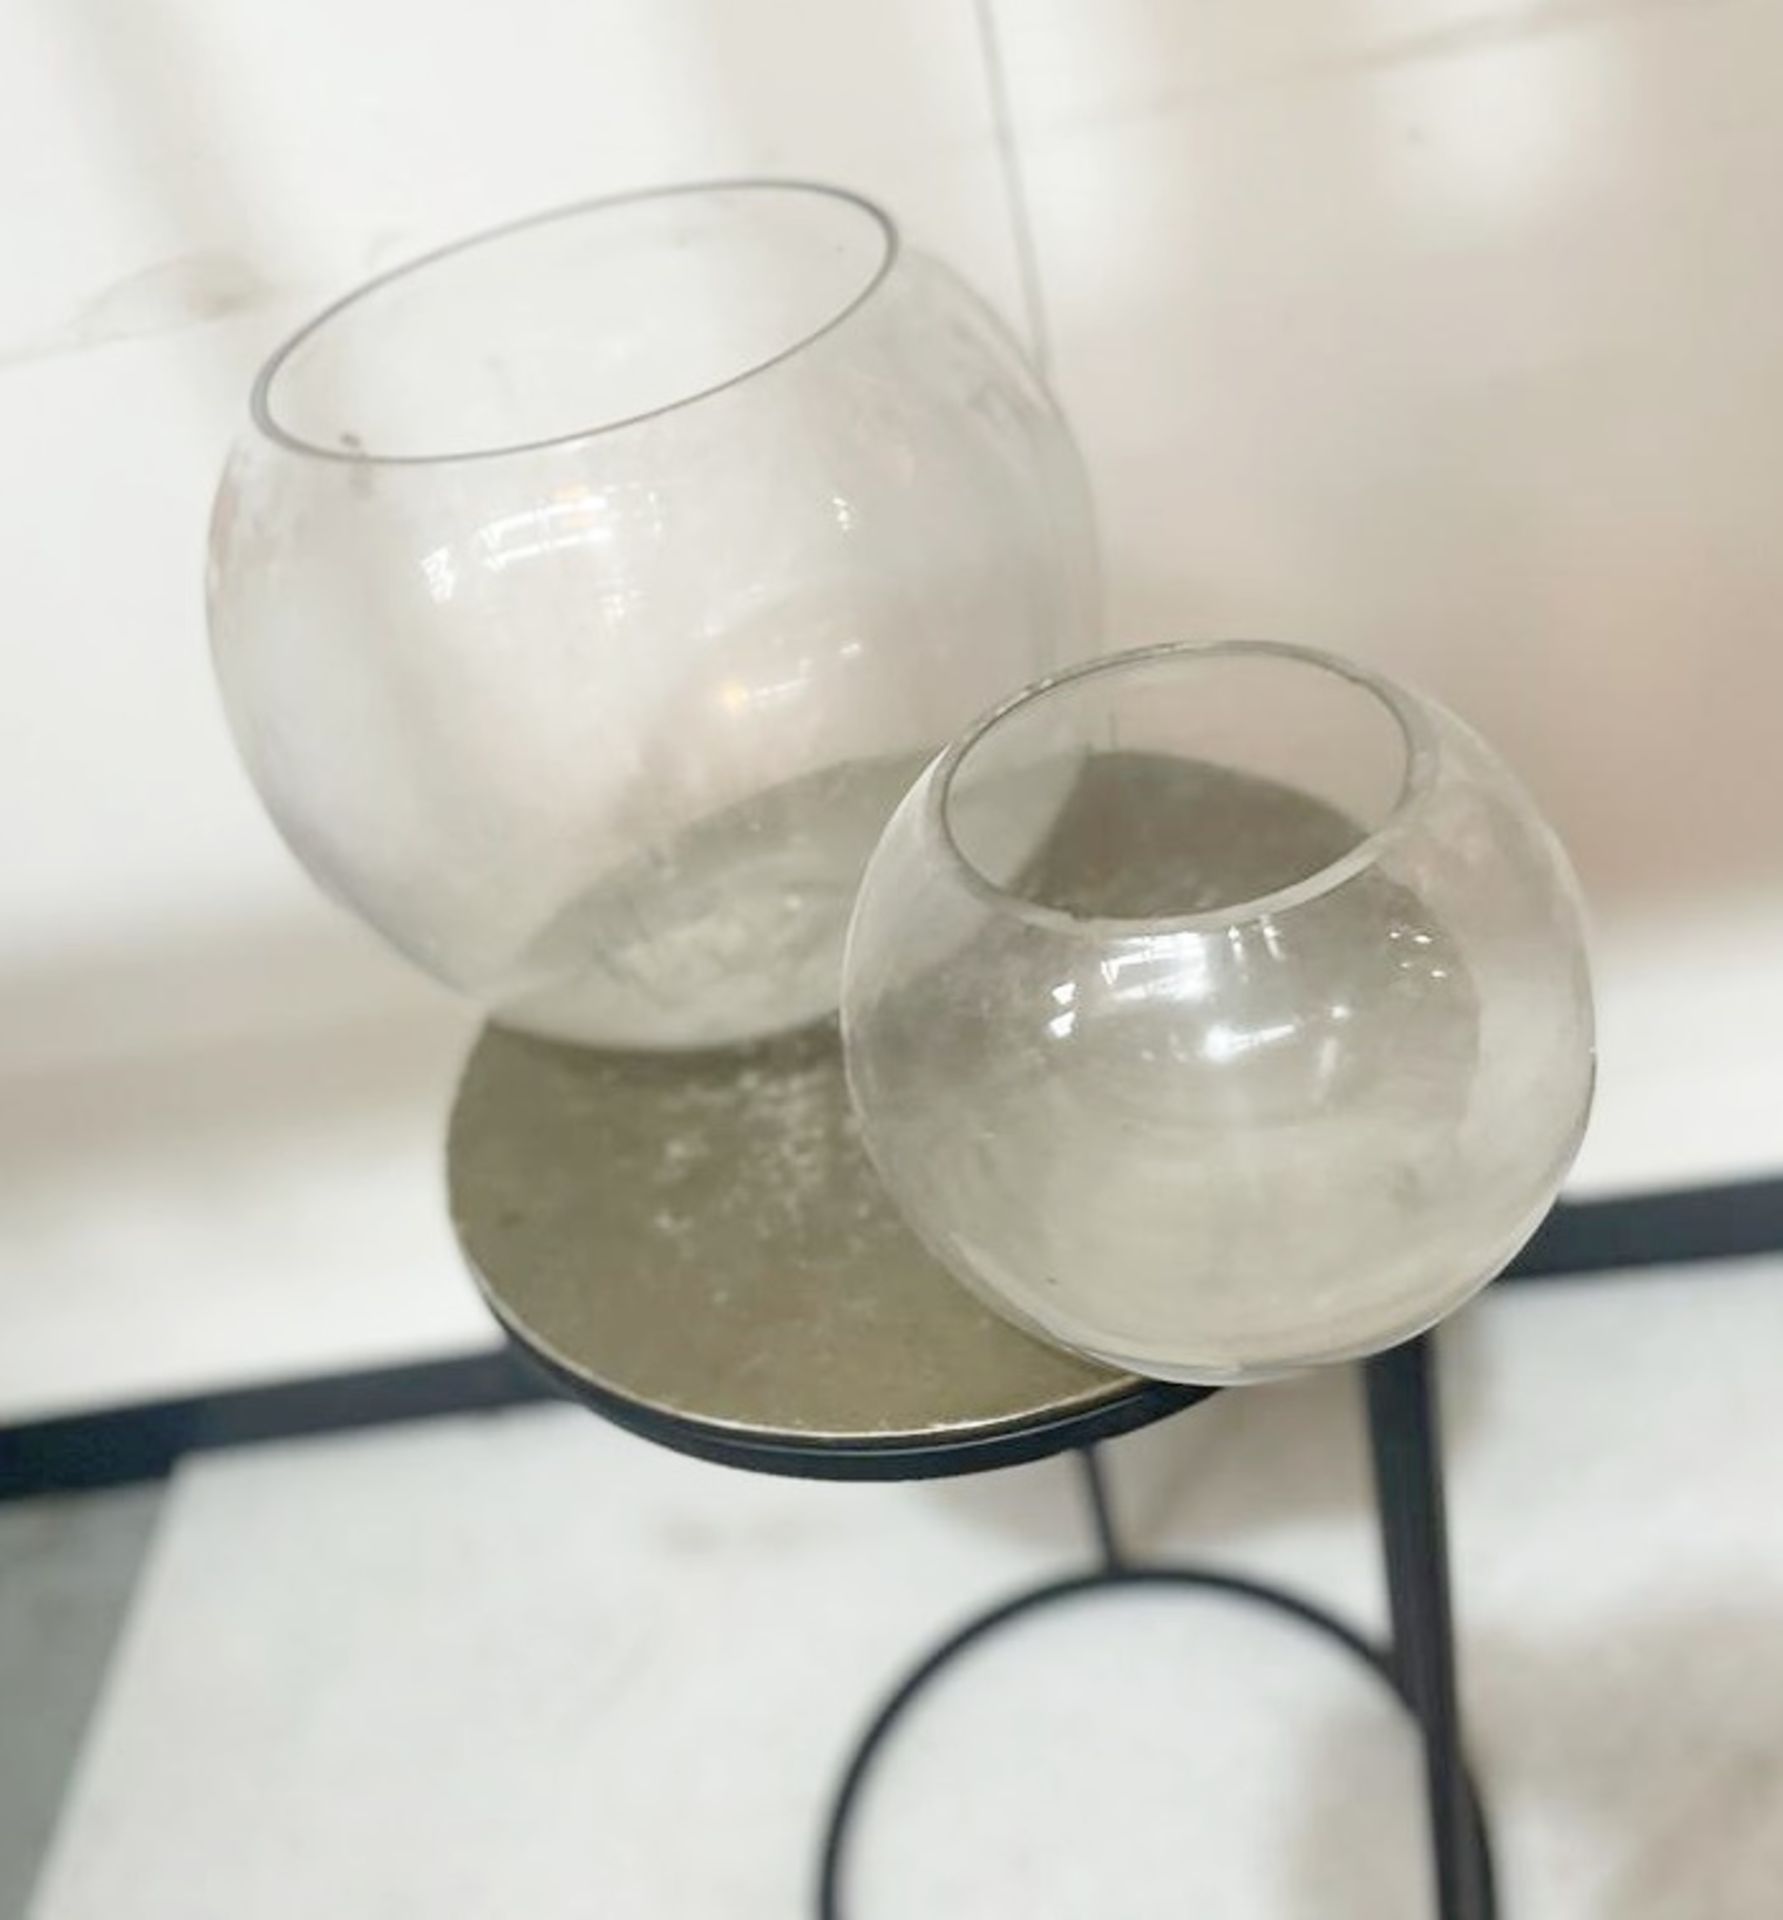 2 x Glass Bowls  - Ref: AUR136 - CL652 - Location: Altrincham WA14 Dimensions: 26(W) x 23(H) cm.